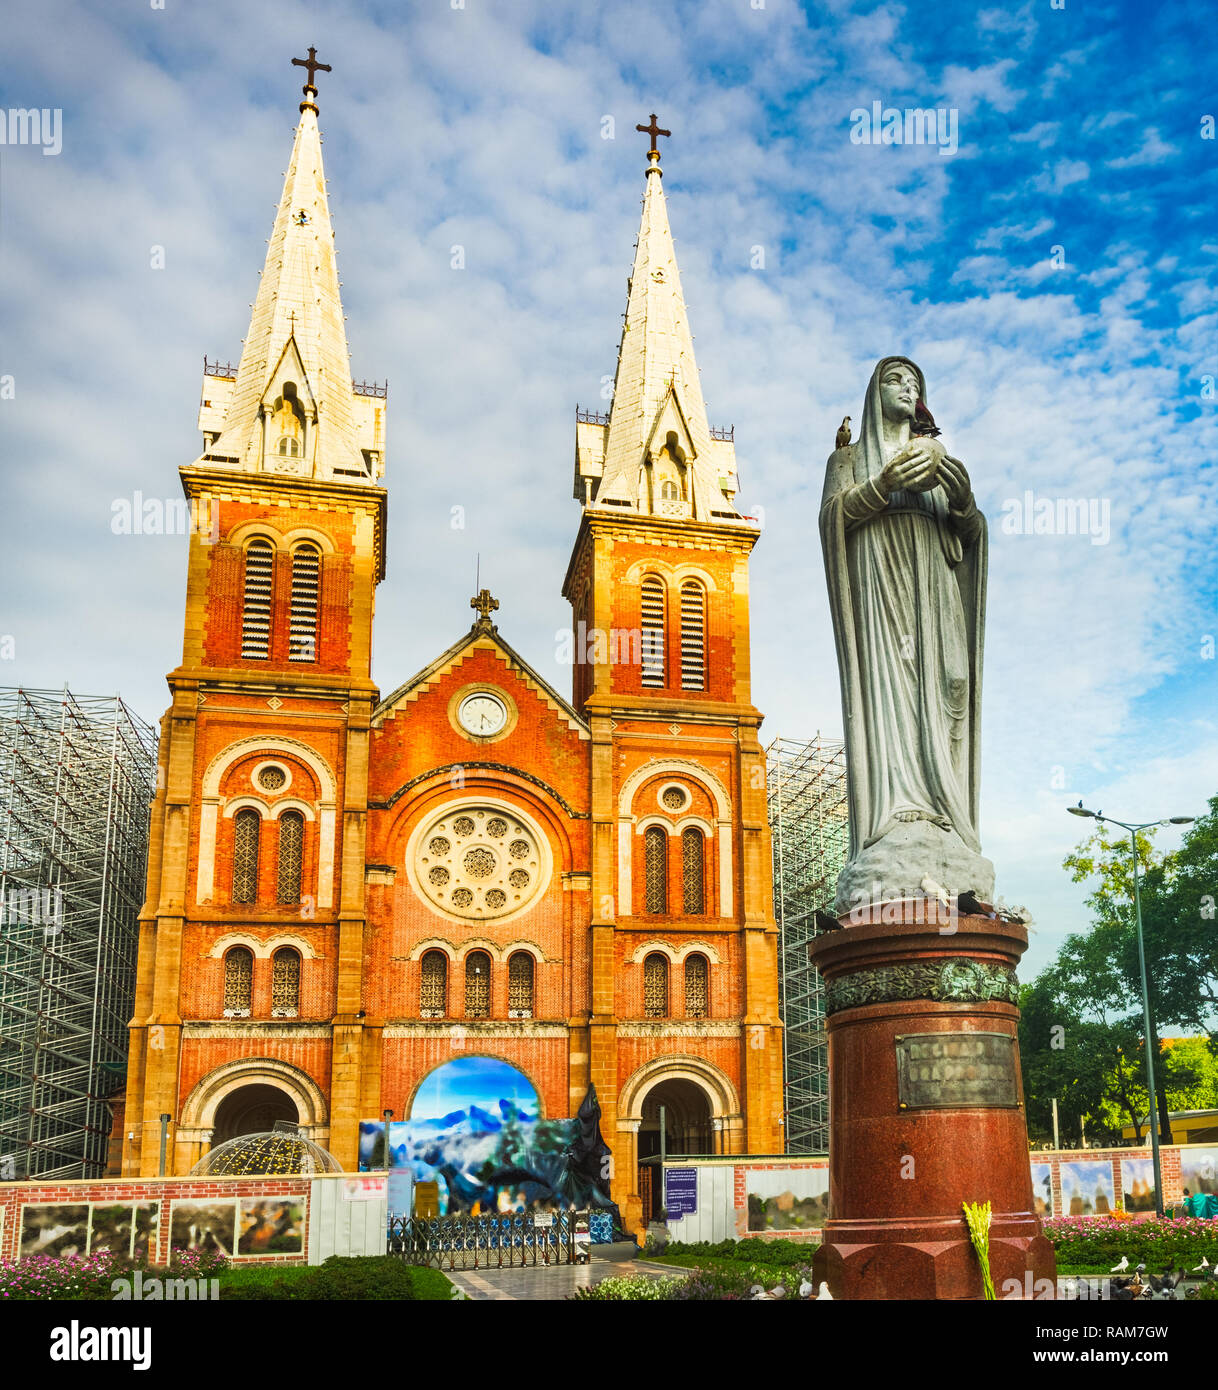 La cattedrale di Notre Dame Basilica di SAIGON in Ho Chi Minh City, Vietnam  Foto stock - Alamy